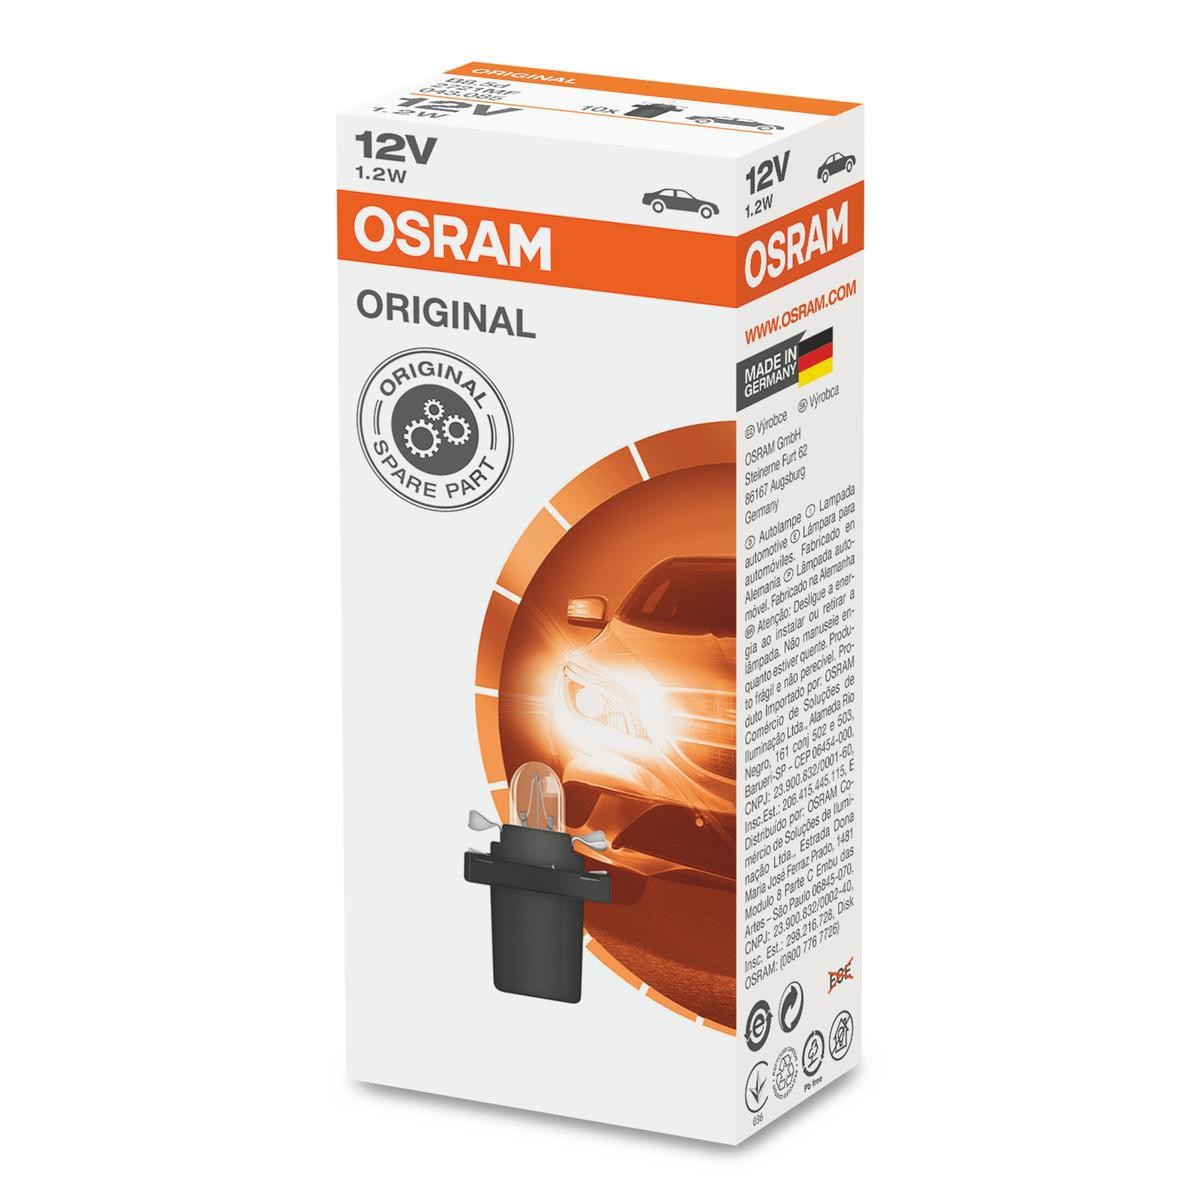 OSRAM 2721MF OSRAM voor ERF M-Serie aan voordelige voorwaarden